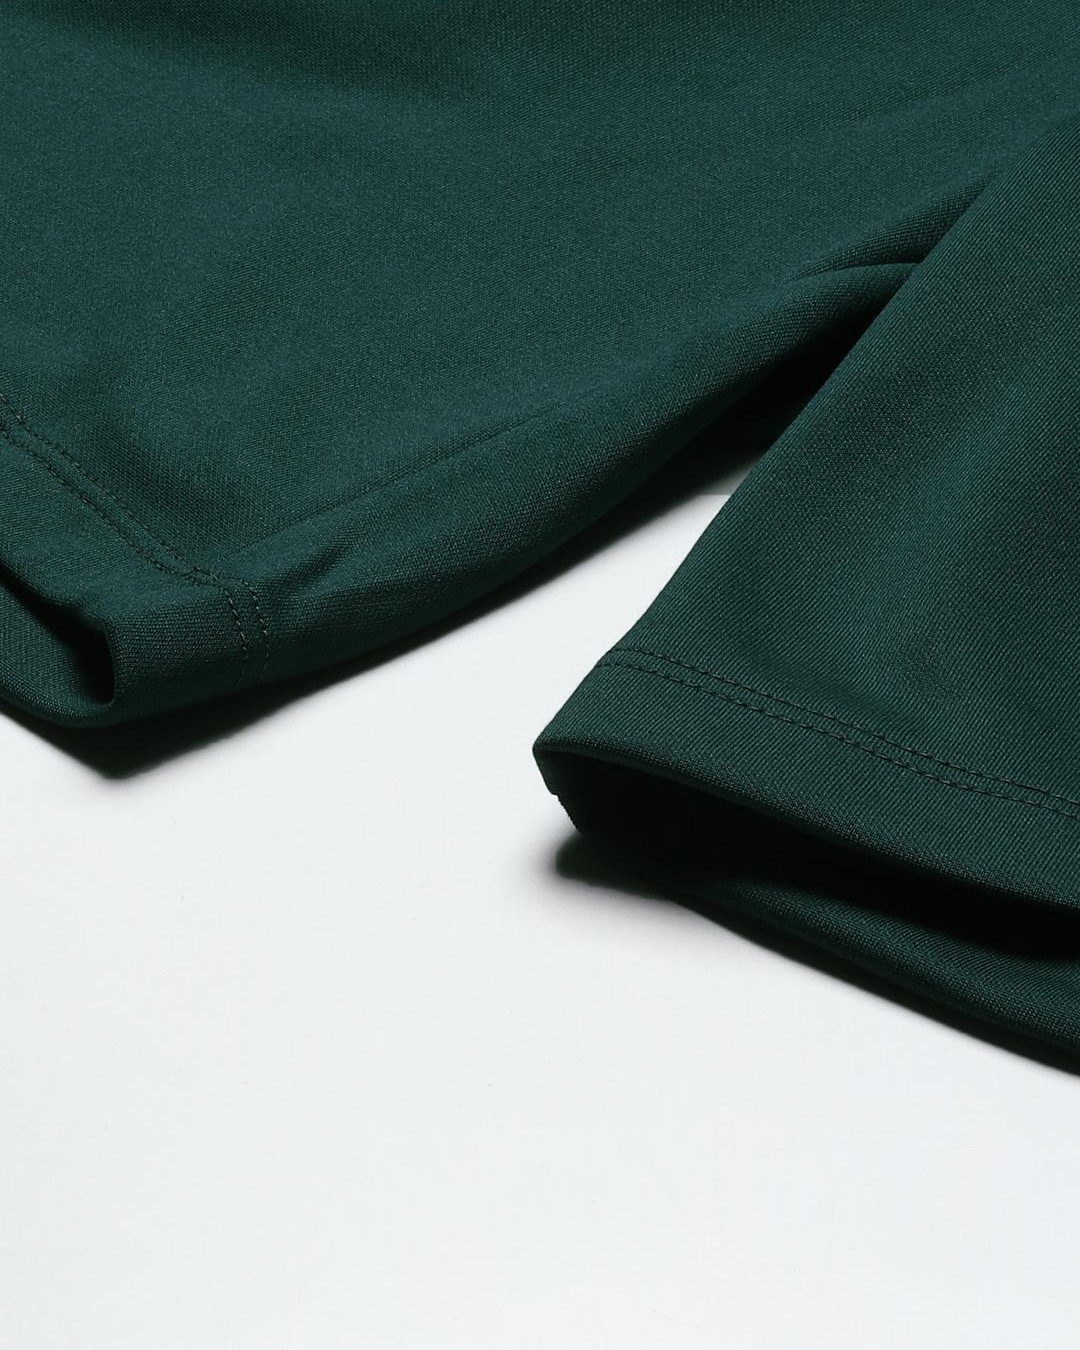 Buy Men's Green Color Block Slim Fit Shorts for Men Green Online at ...